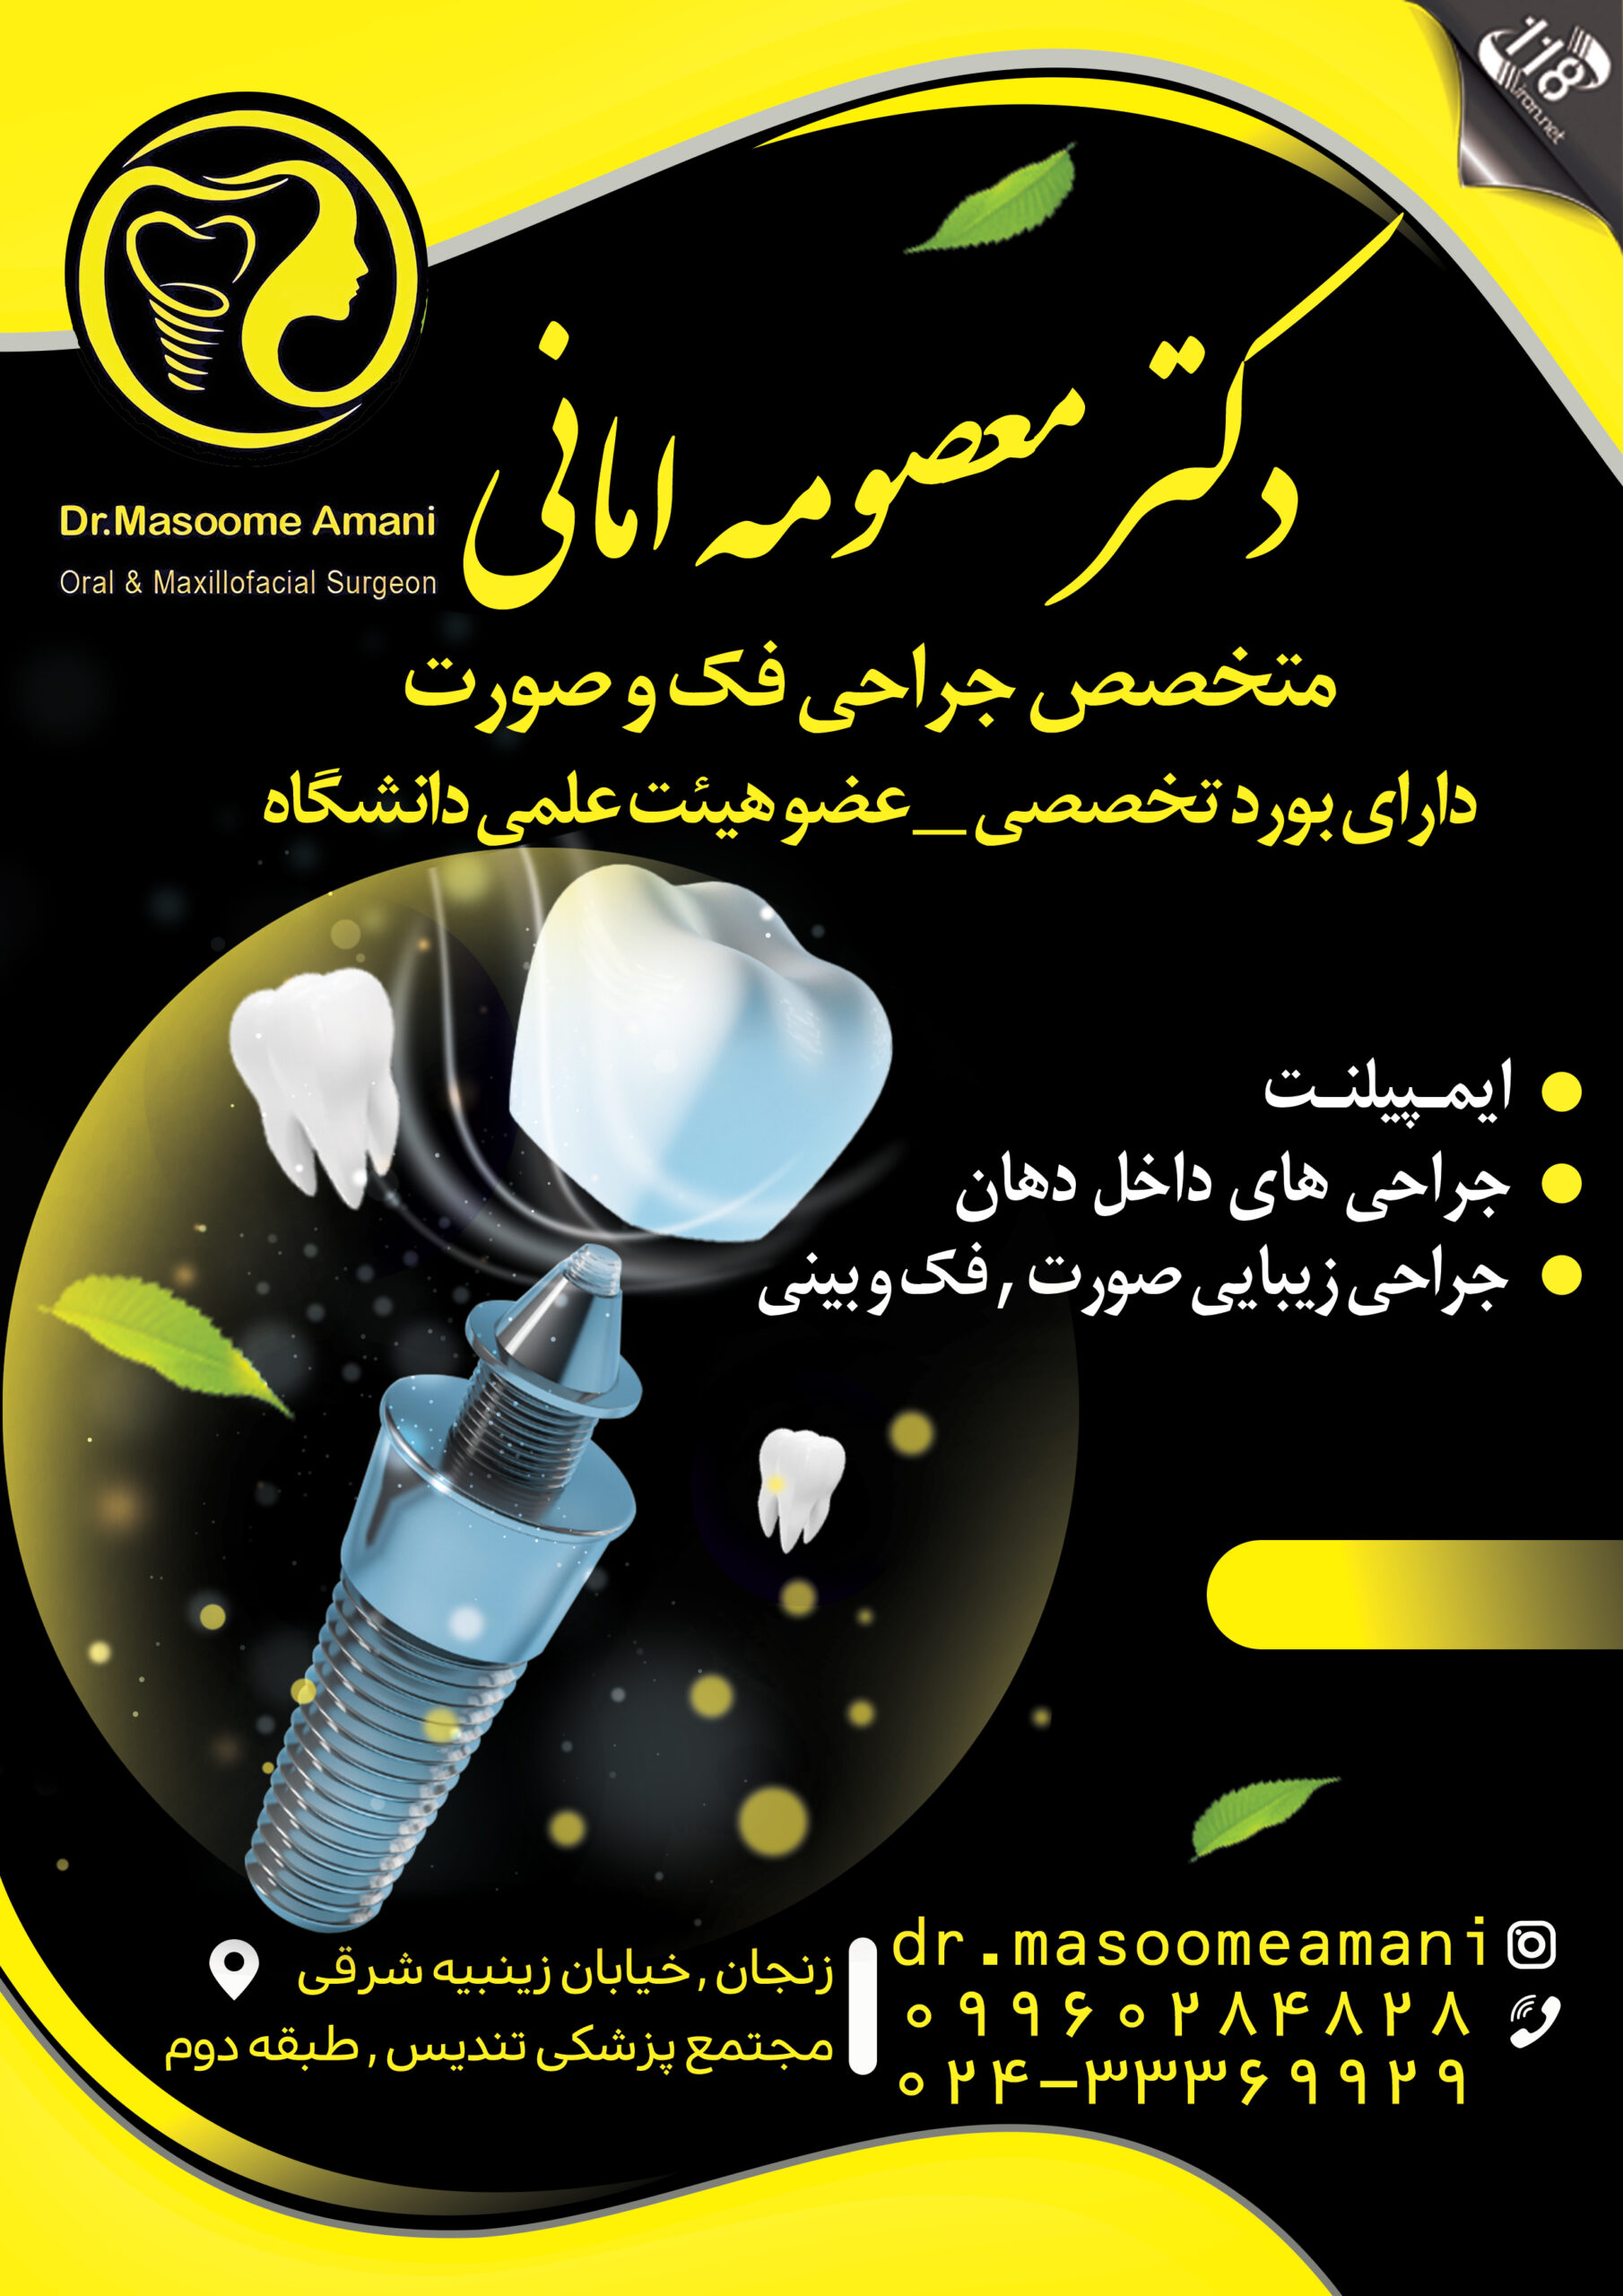  دکتر معصومه امانی در زنجان 